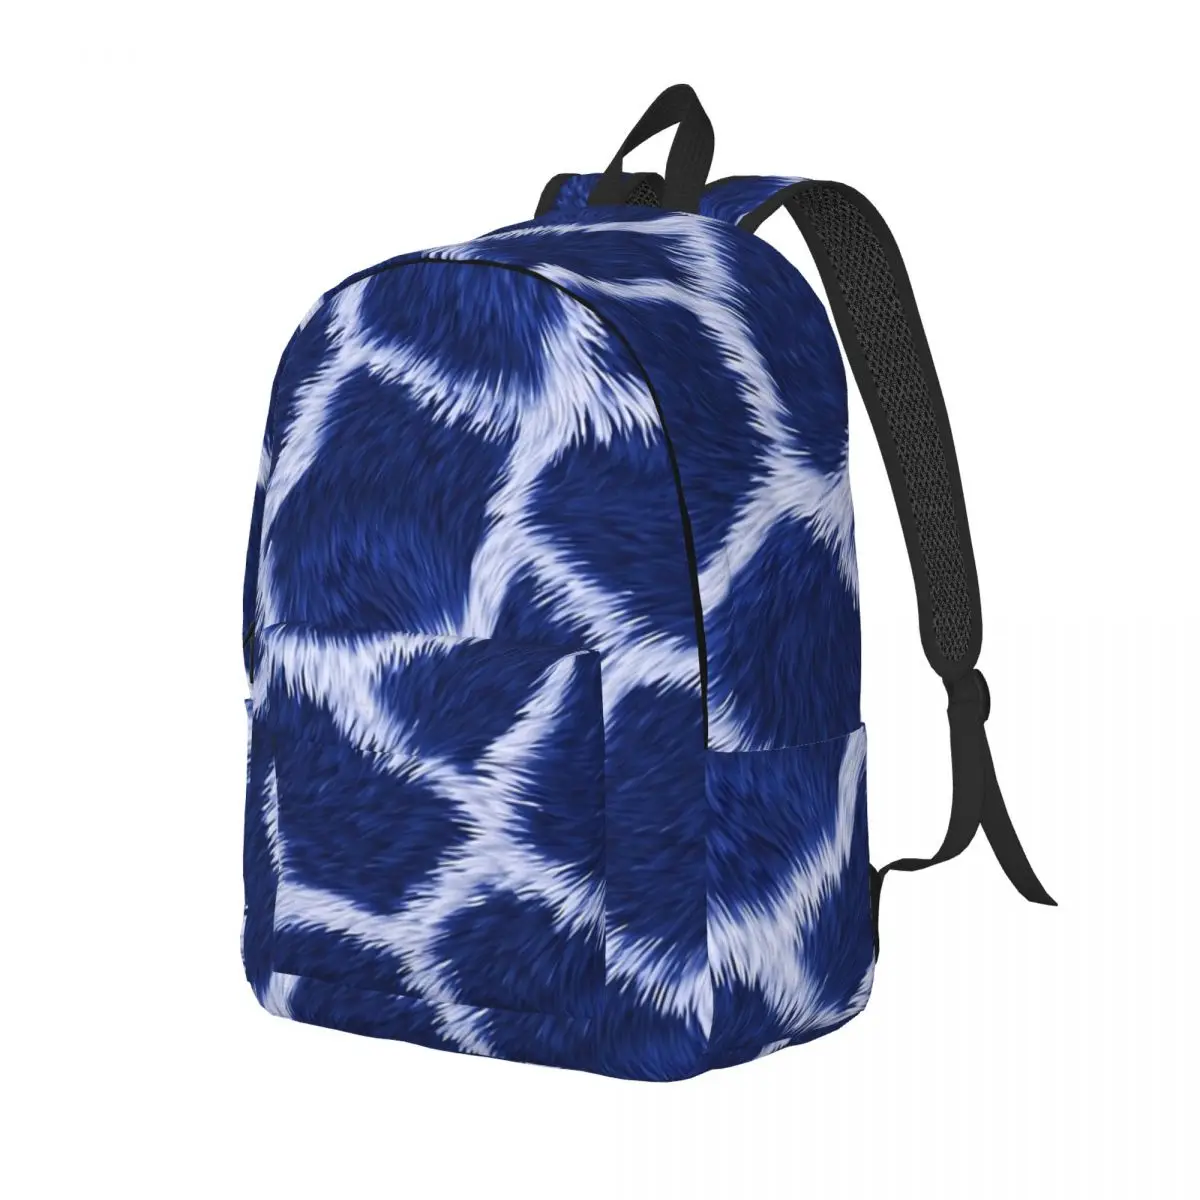 

Синий кожаный рюкзак с жирафом, рюкзаки из полиэстера с принтом животных для подростков, рюкзаки в уличном стиле, мягкие милые школьные ранцы, рюкзак